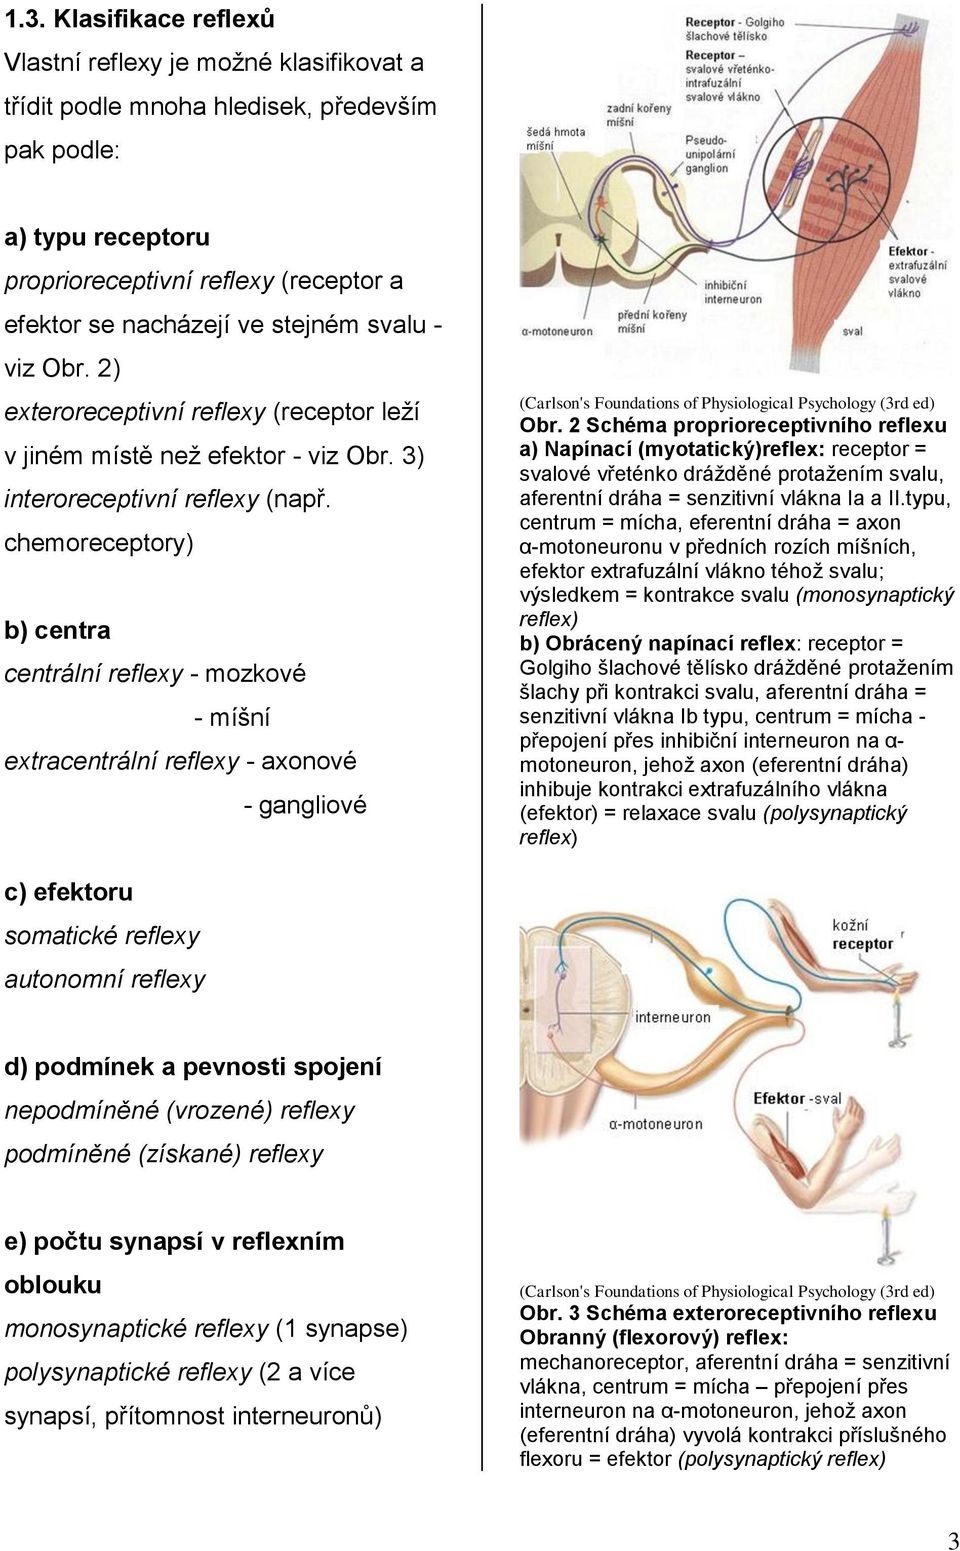 chemoreceptory) b) centra centrální reflexy - mozkové - míšní extracentrální reflexy - axonové - gangliové (Carlson's Foundations of Physiological Psychology (3rd ed) Obr.